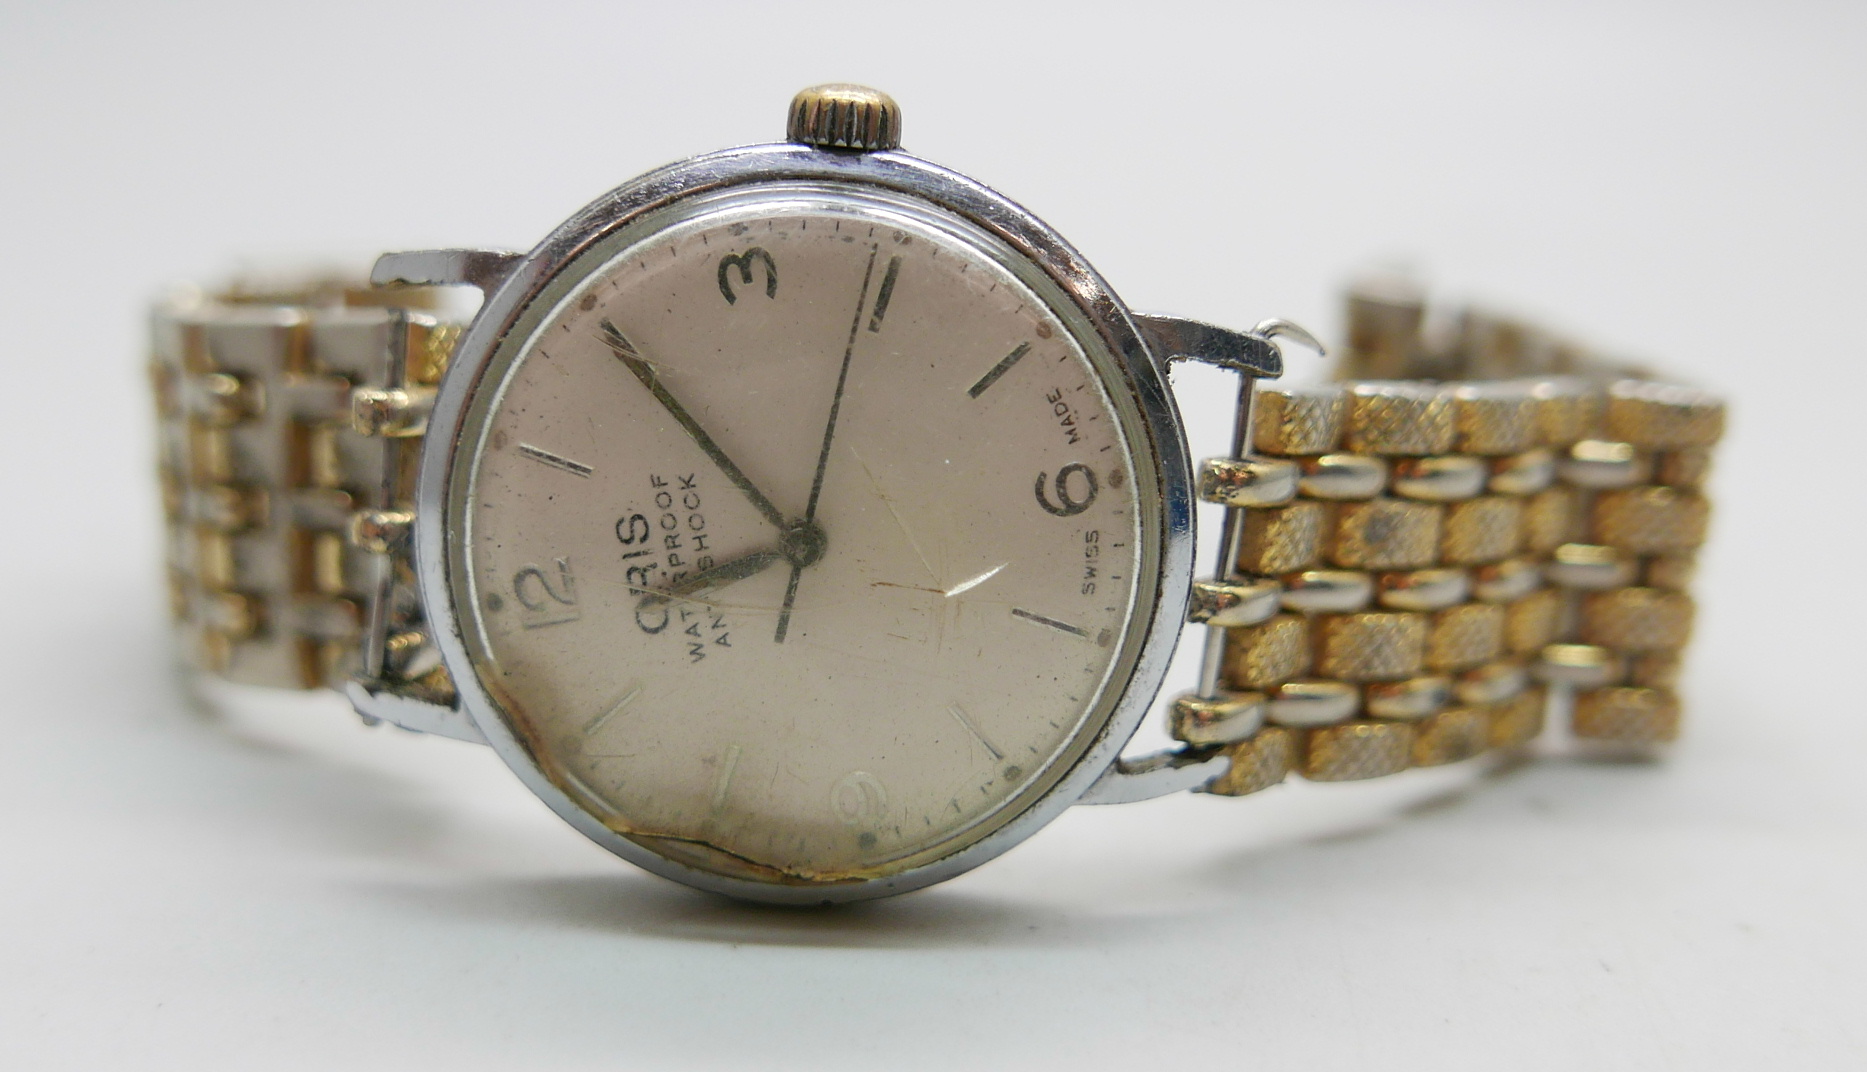 Three gentleman's vintage wristwatches; Seiko, Oris and Zaigor Lifetimer - Image 4 of 4